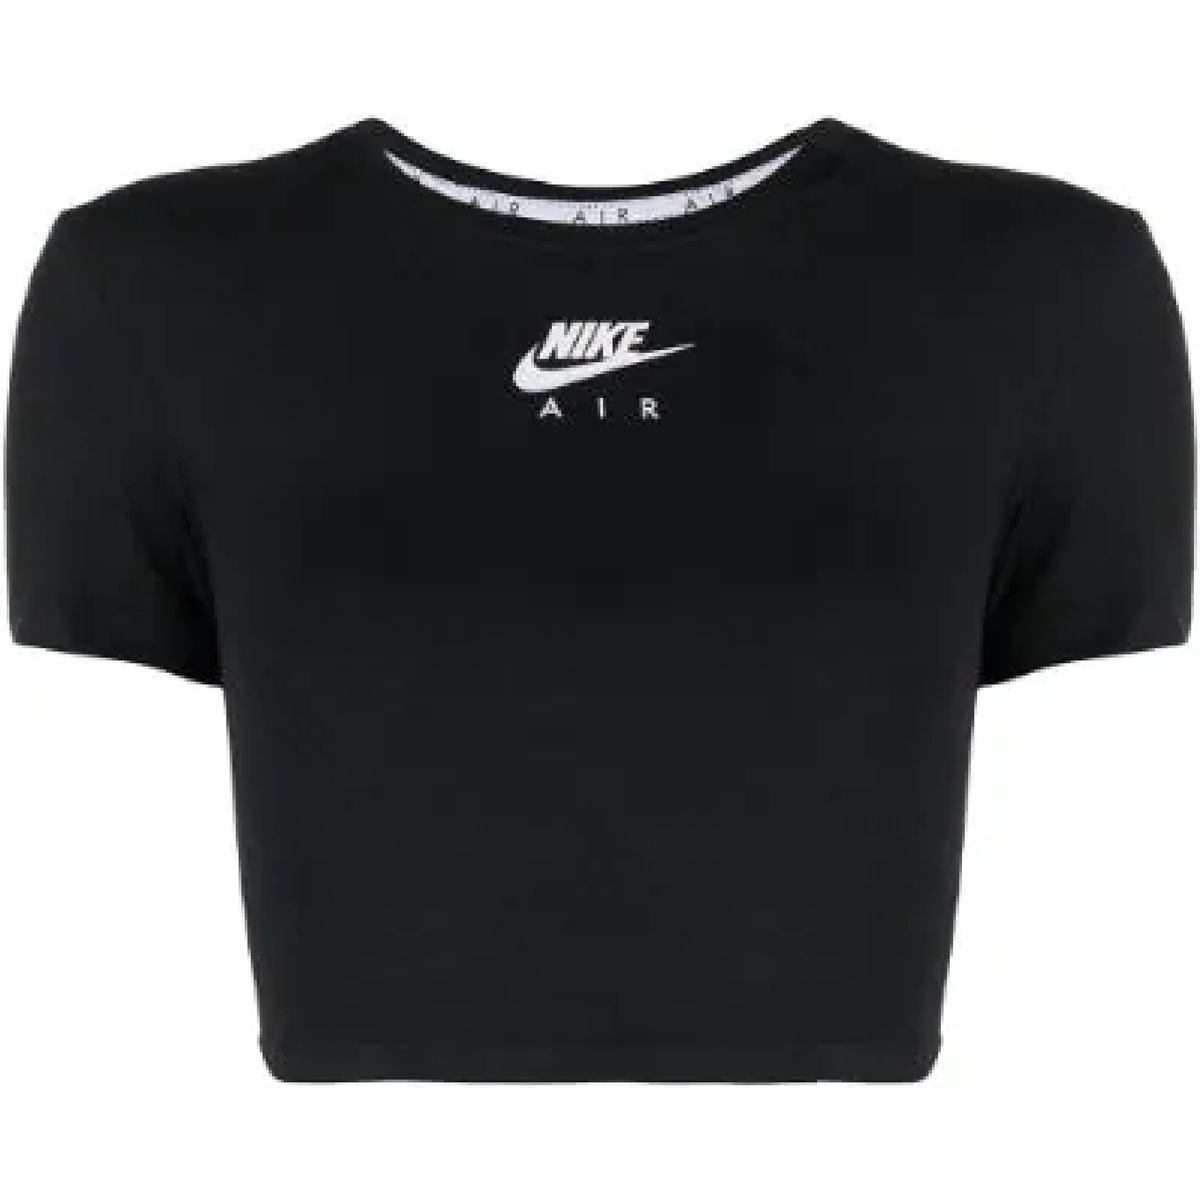 Vêtements Femme T-shirts manches courtes Nike CZ8632 Noir